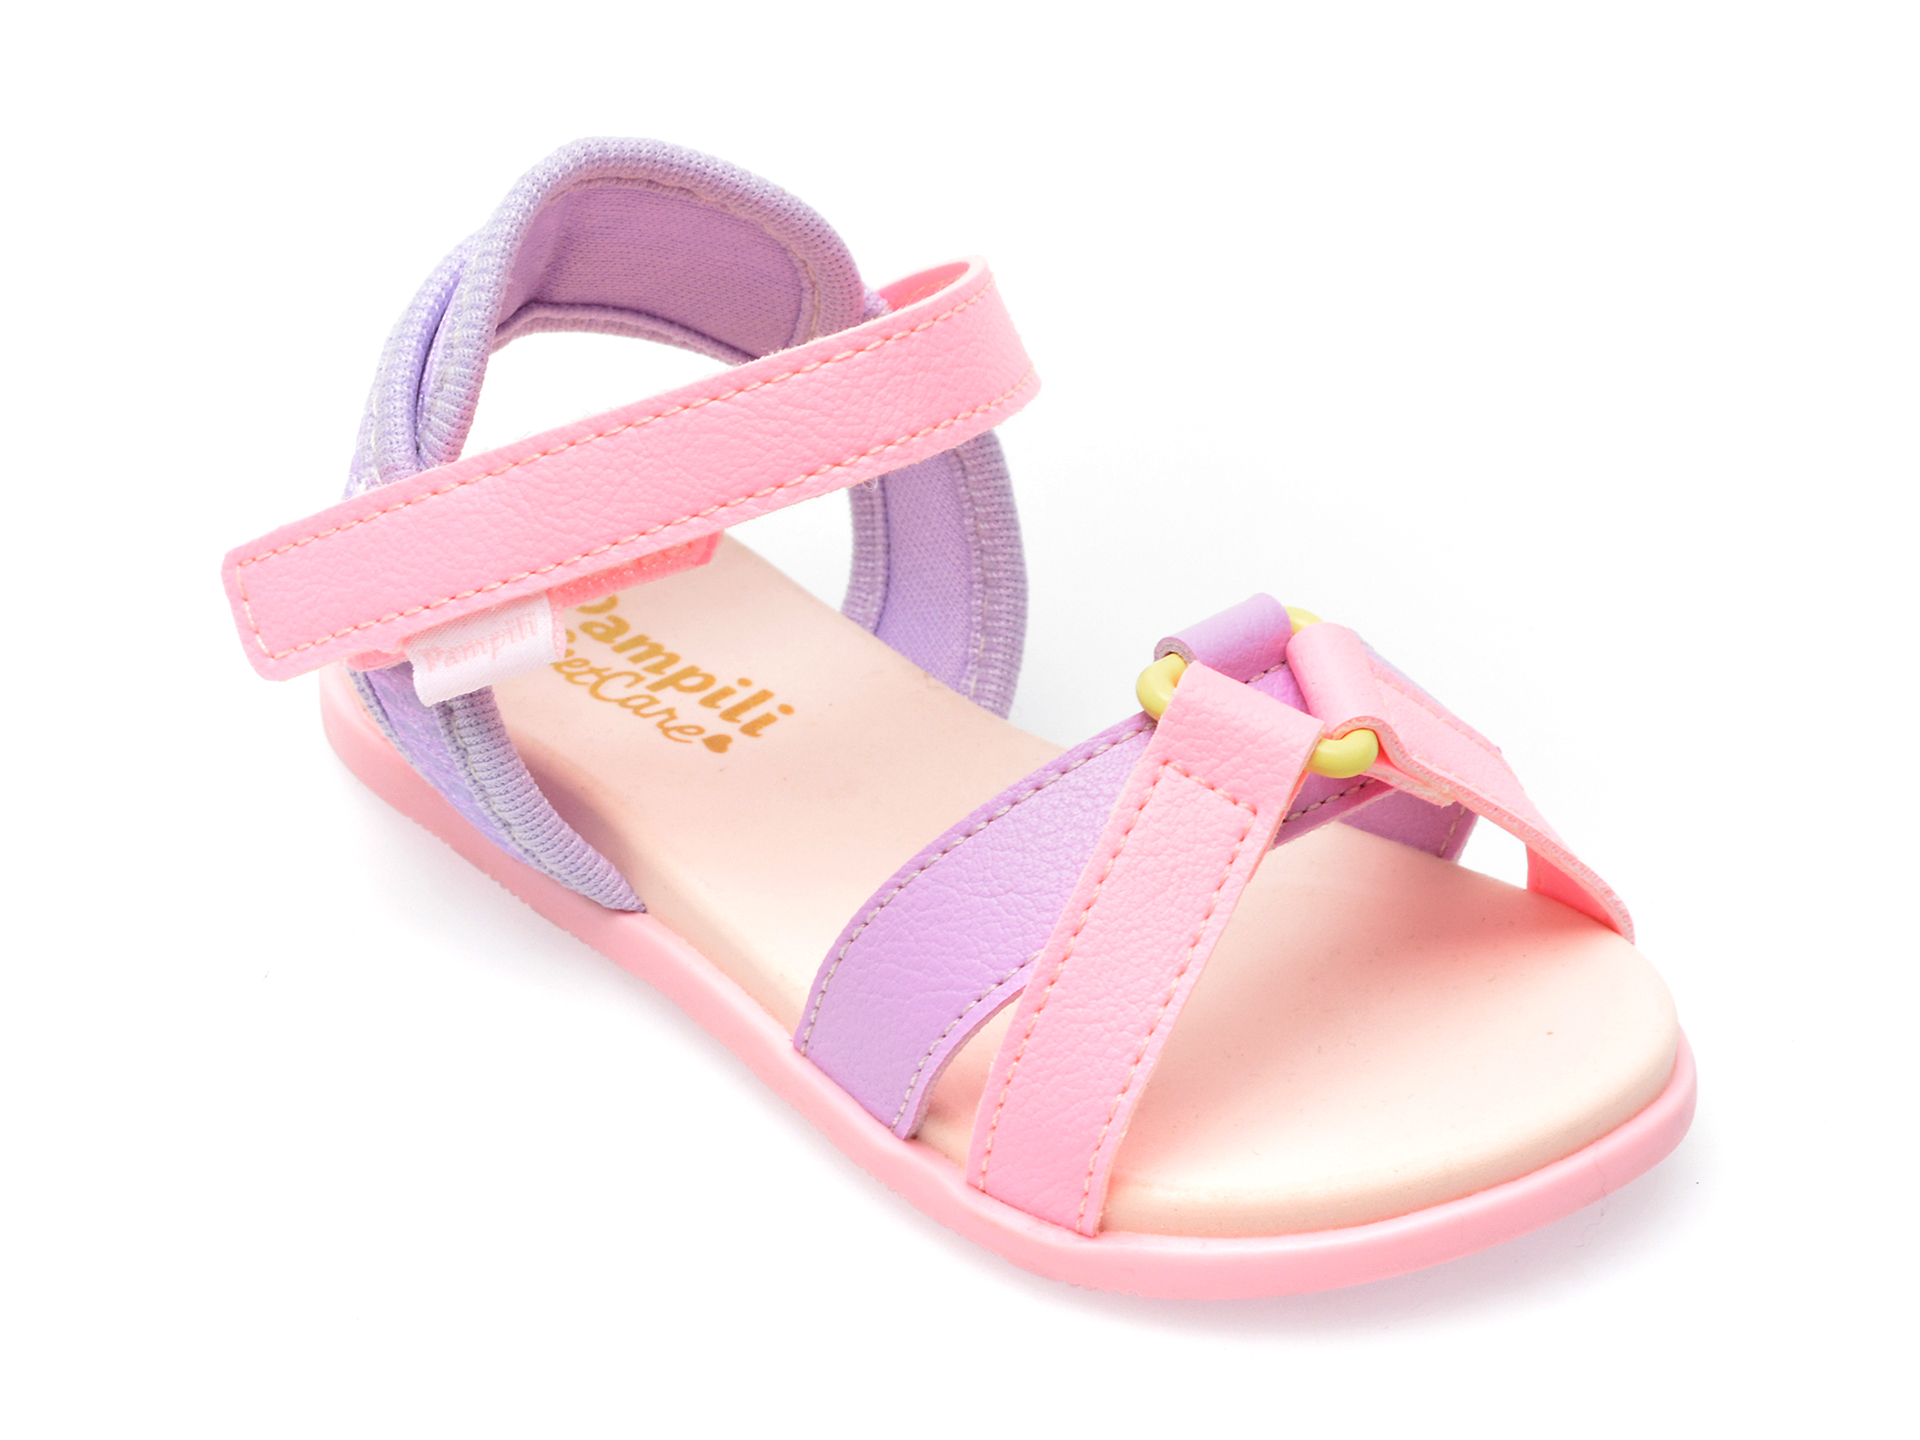 Sandale PAMPILI roz, 639057, din piele ecologica /copii/incaltaminte